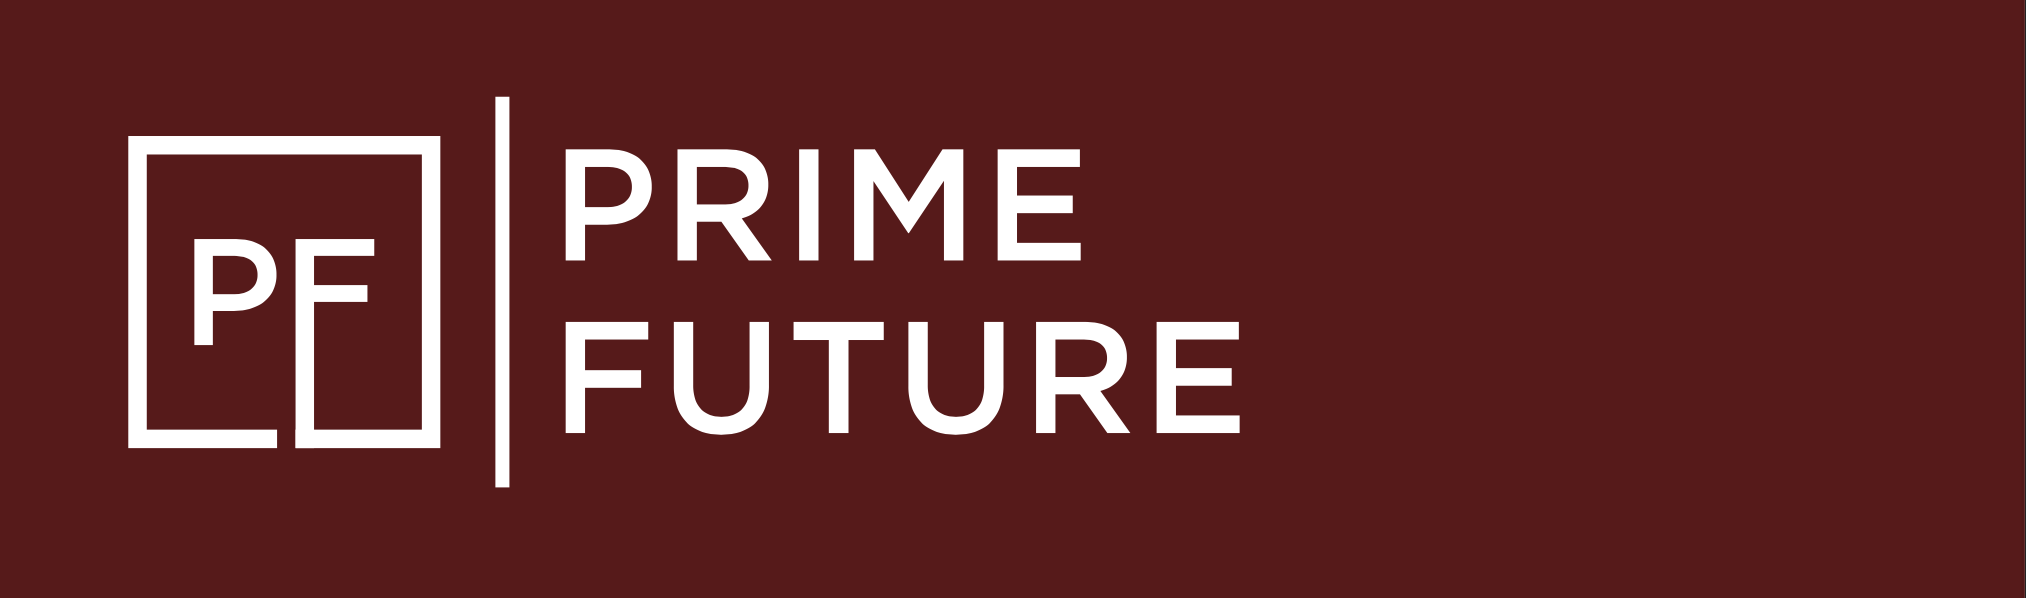 Prime Future